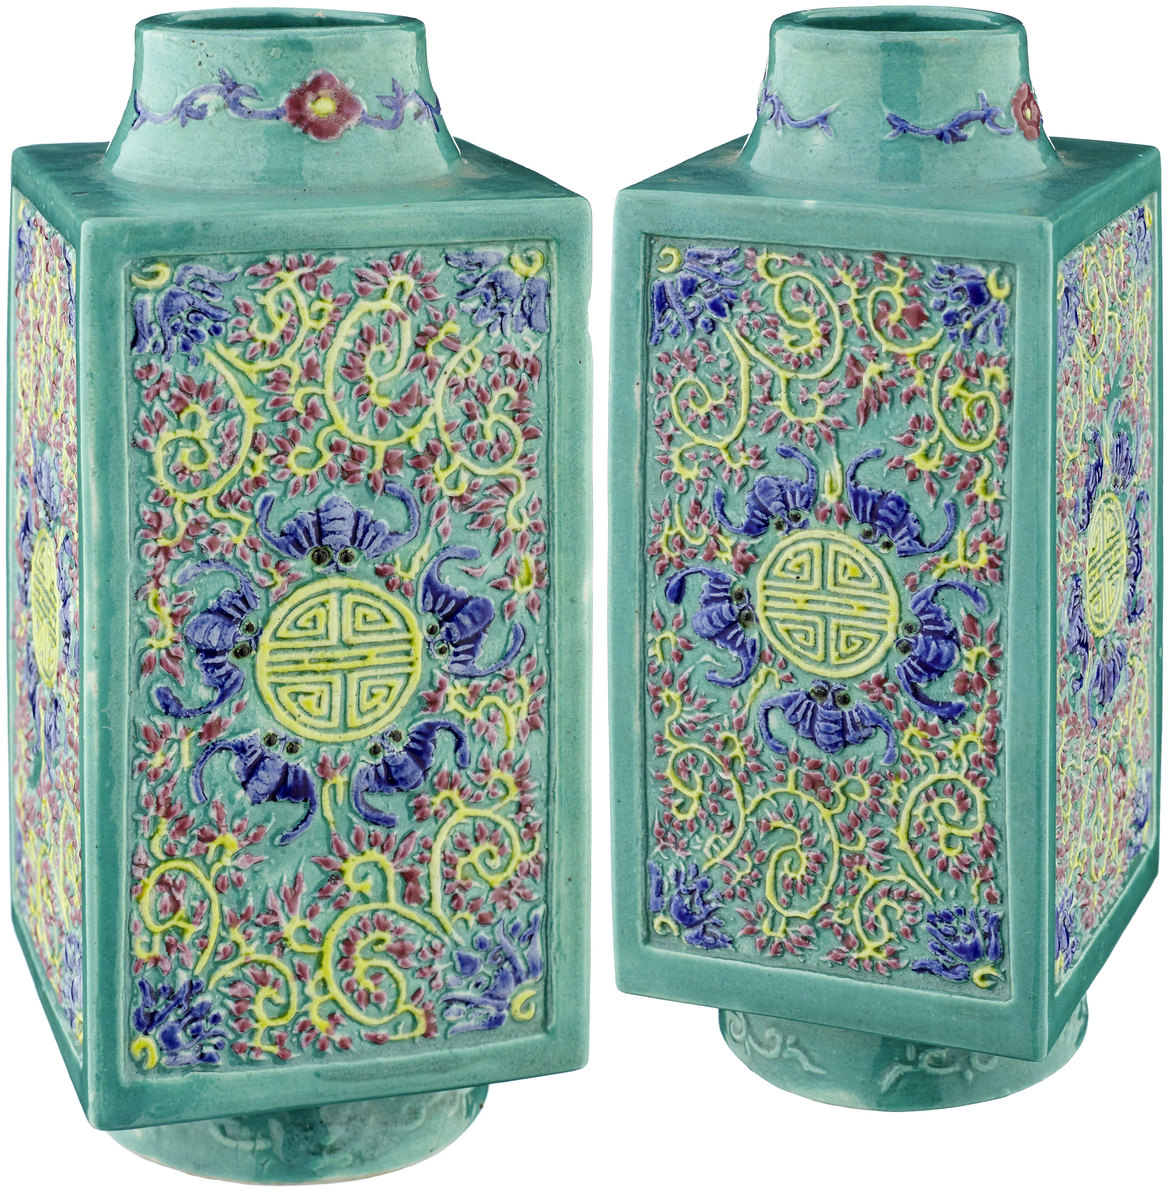 Paar congförmige VasenChina um 1900. Biscuitporzellan mit Emailfarben. Reliefdekor von